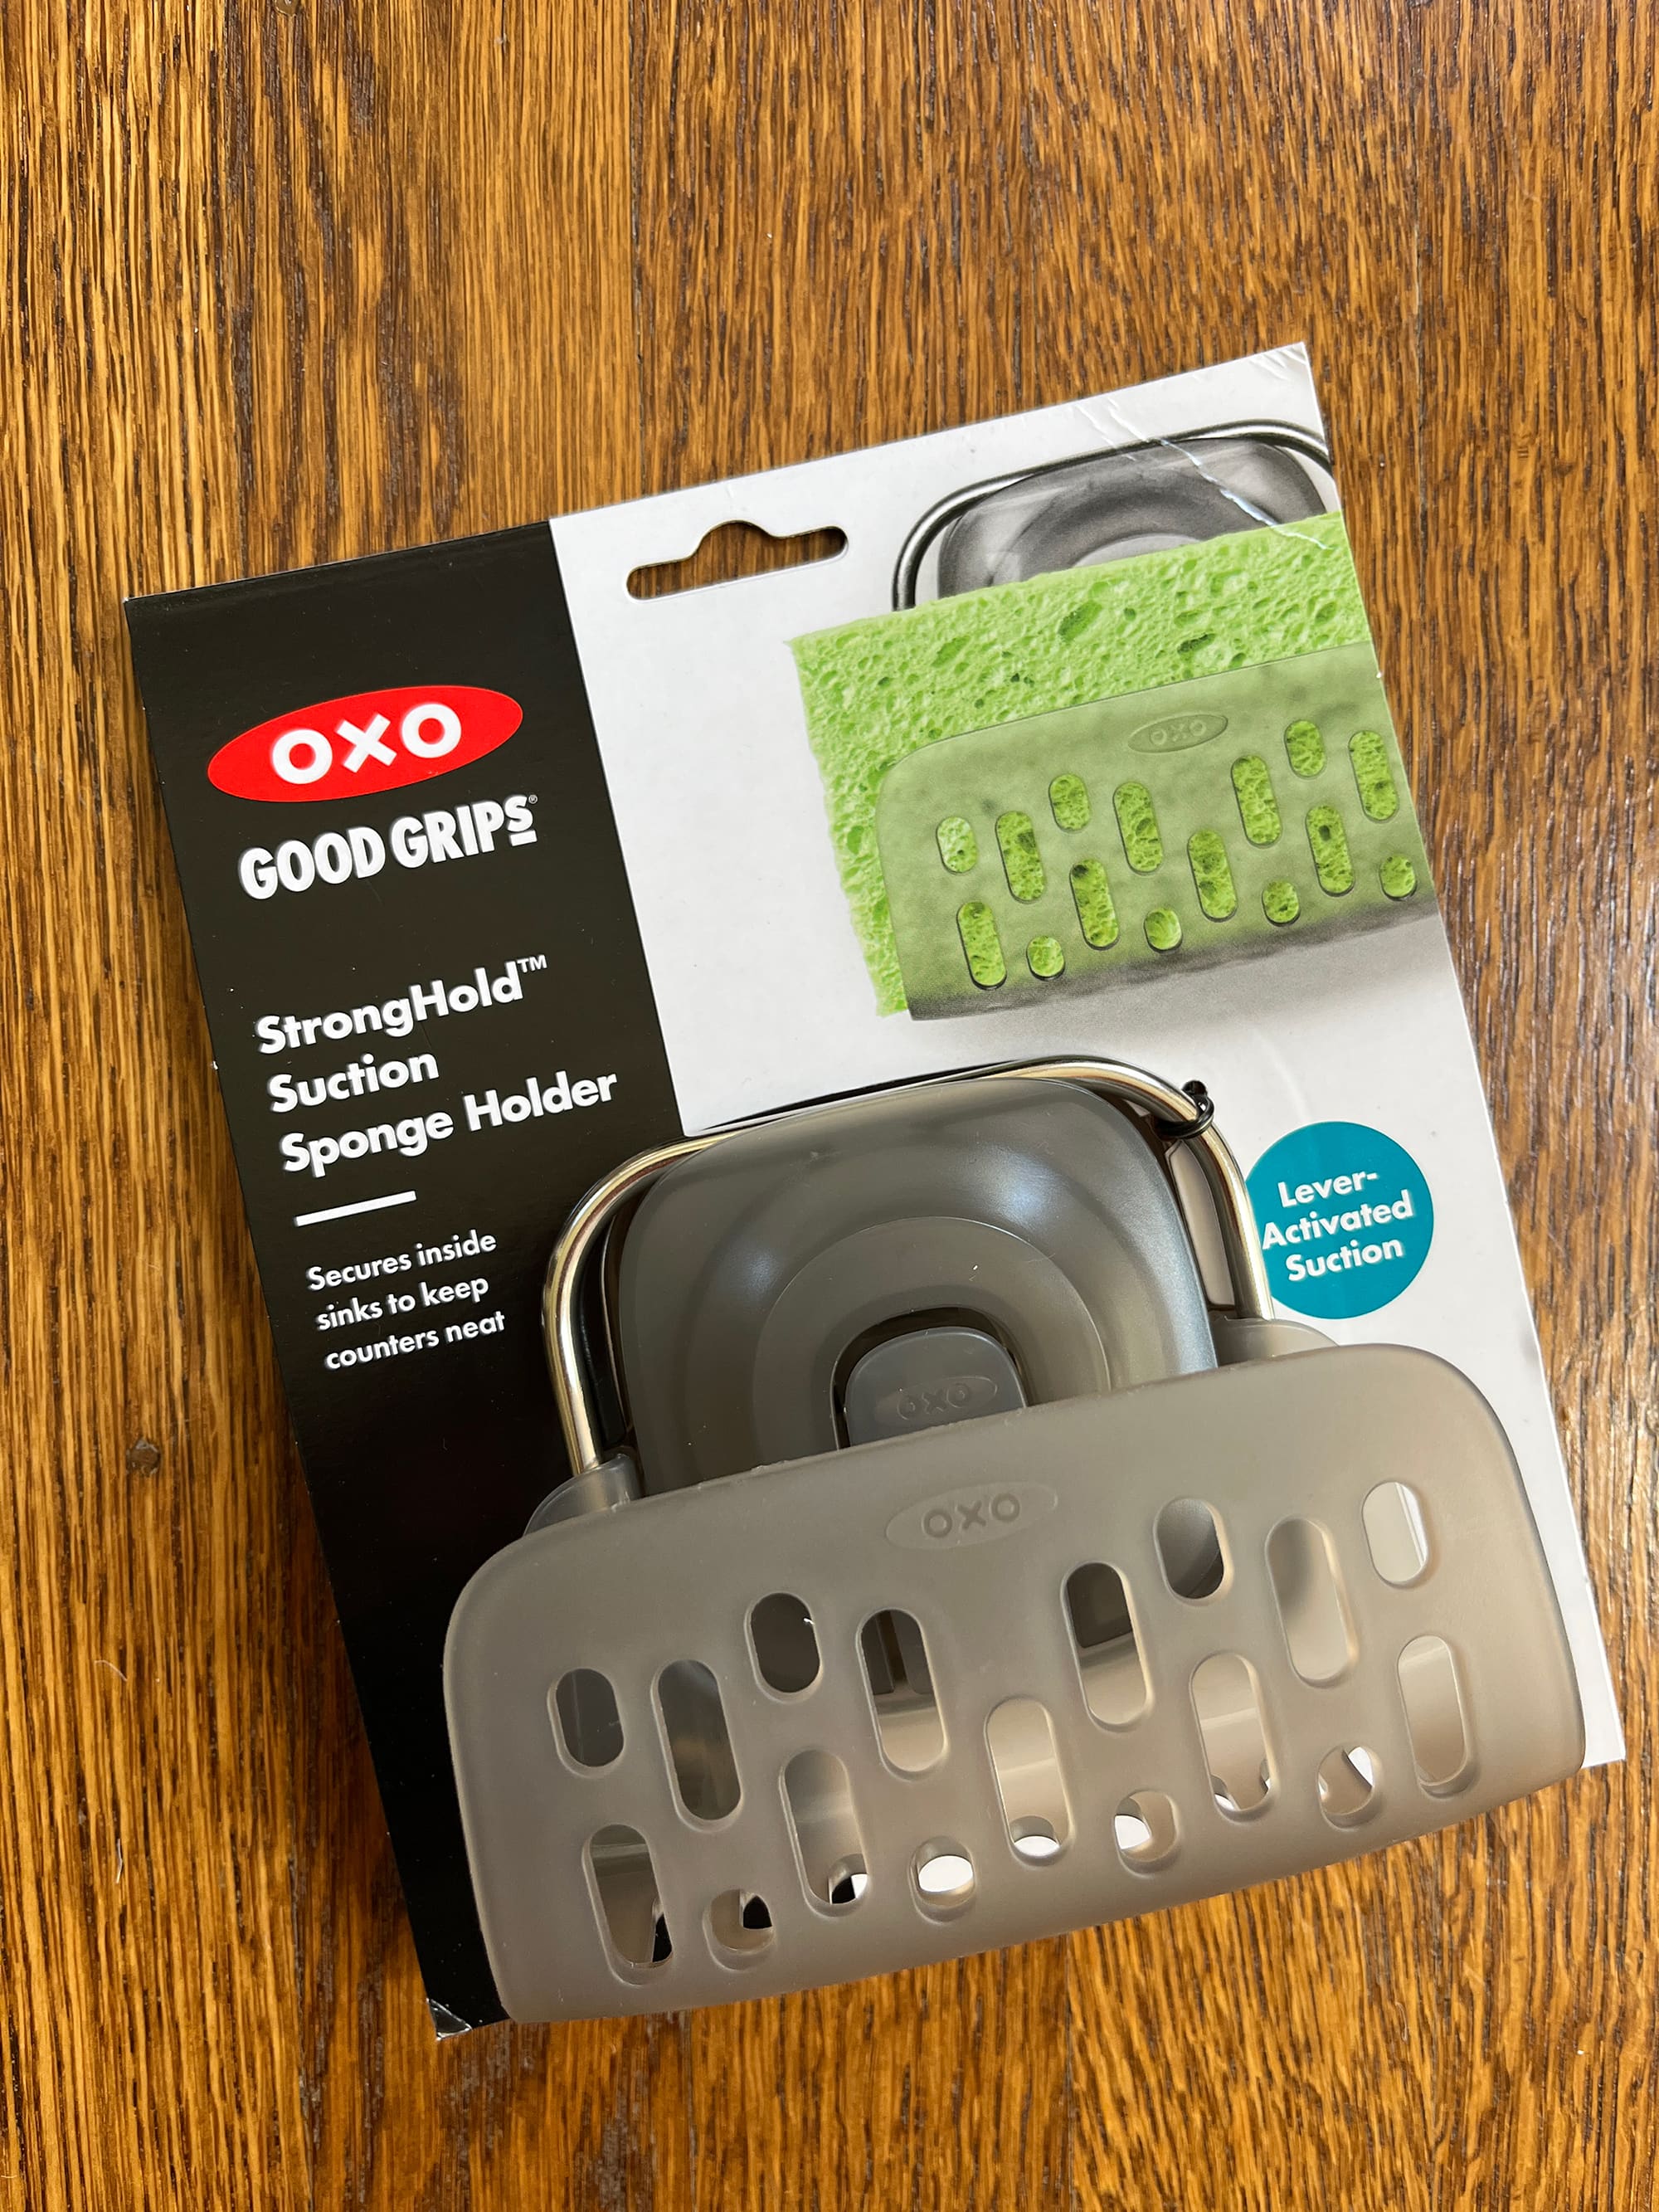 OXO Good Grips StrongHold Suction Sponge Holder